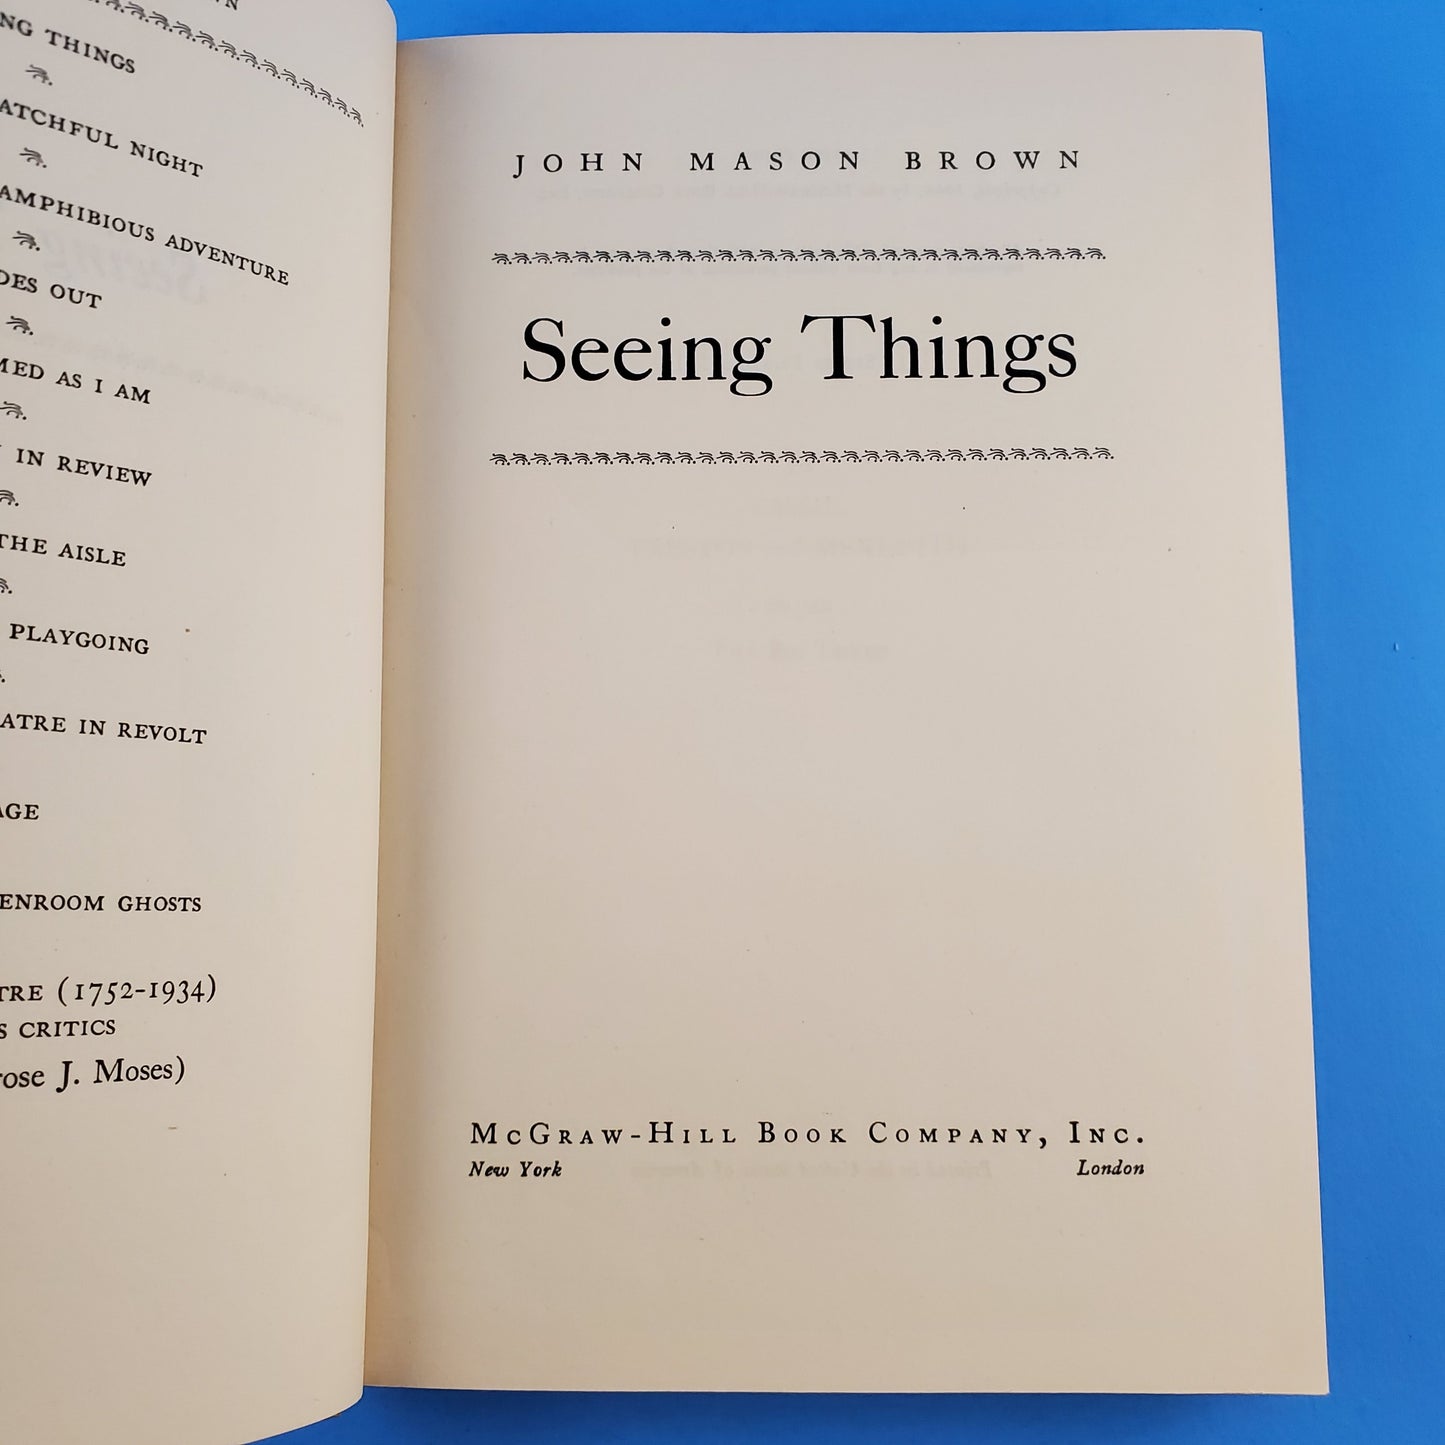 The "Seeing Things" Series